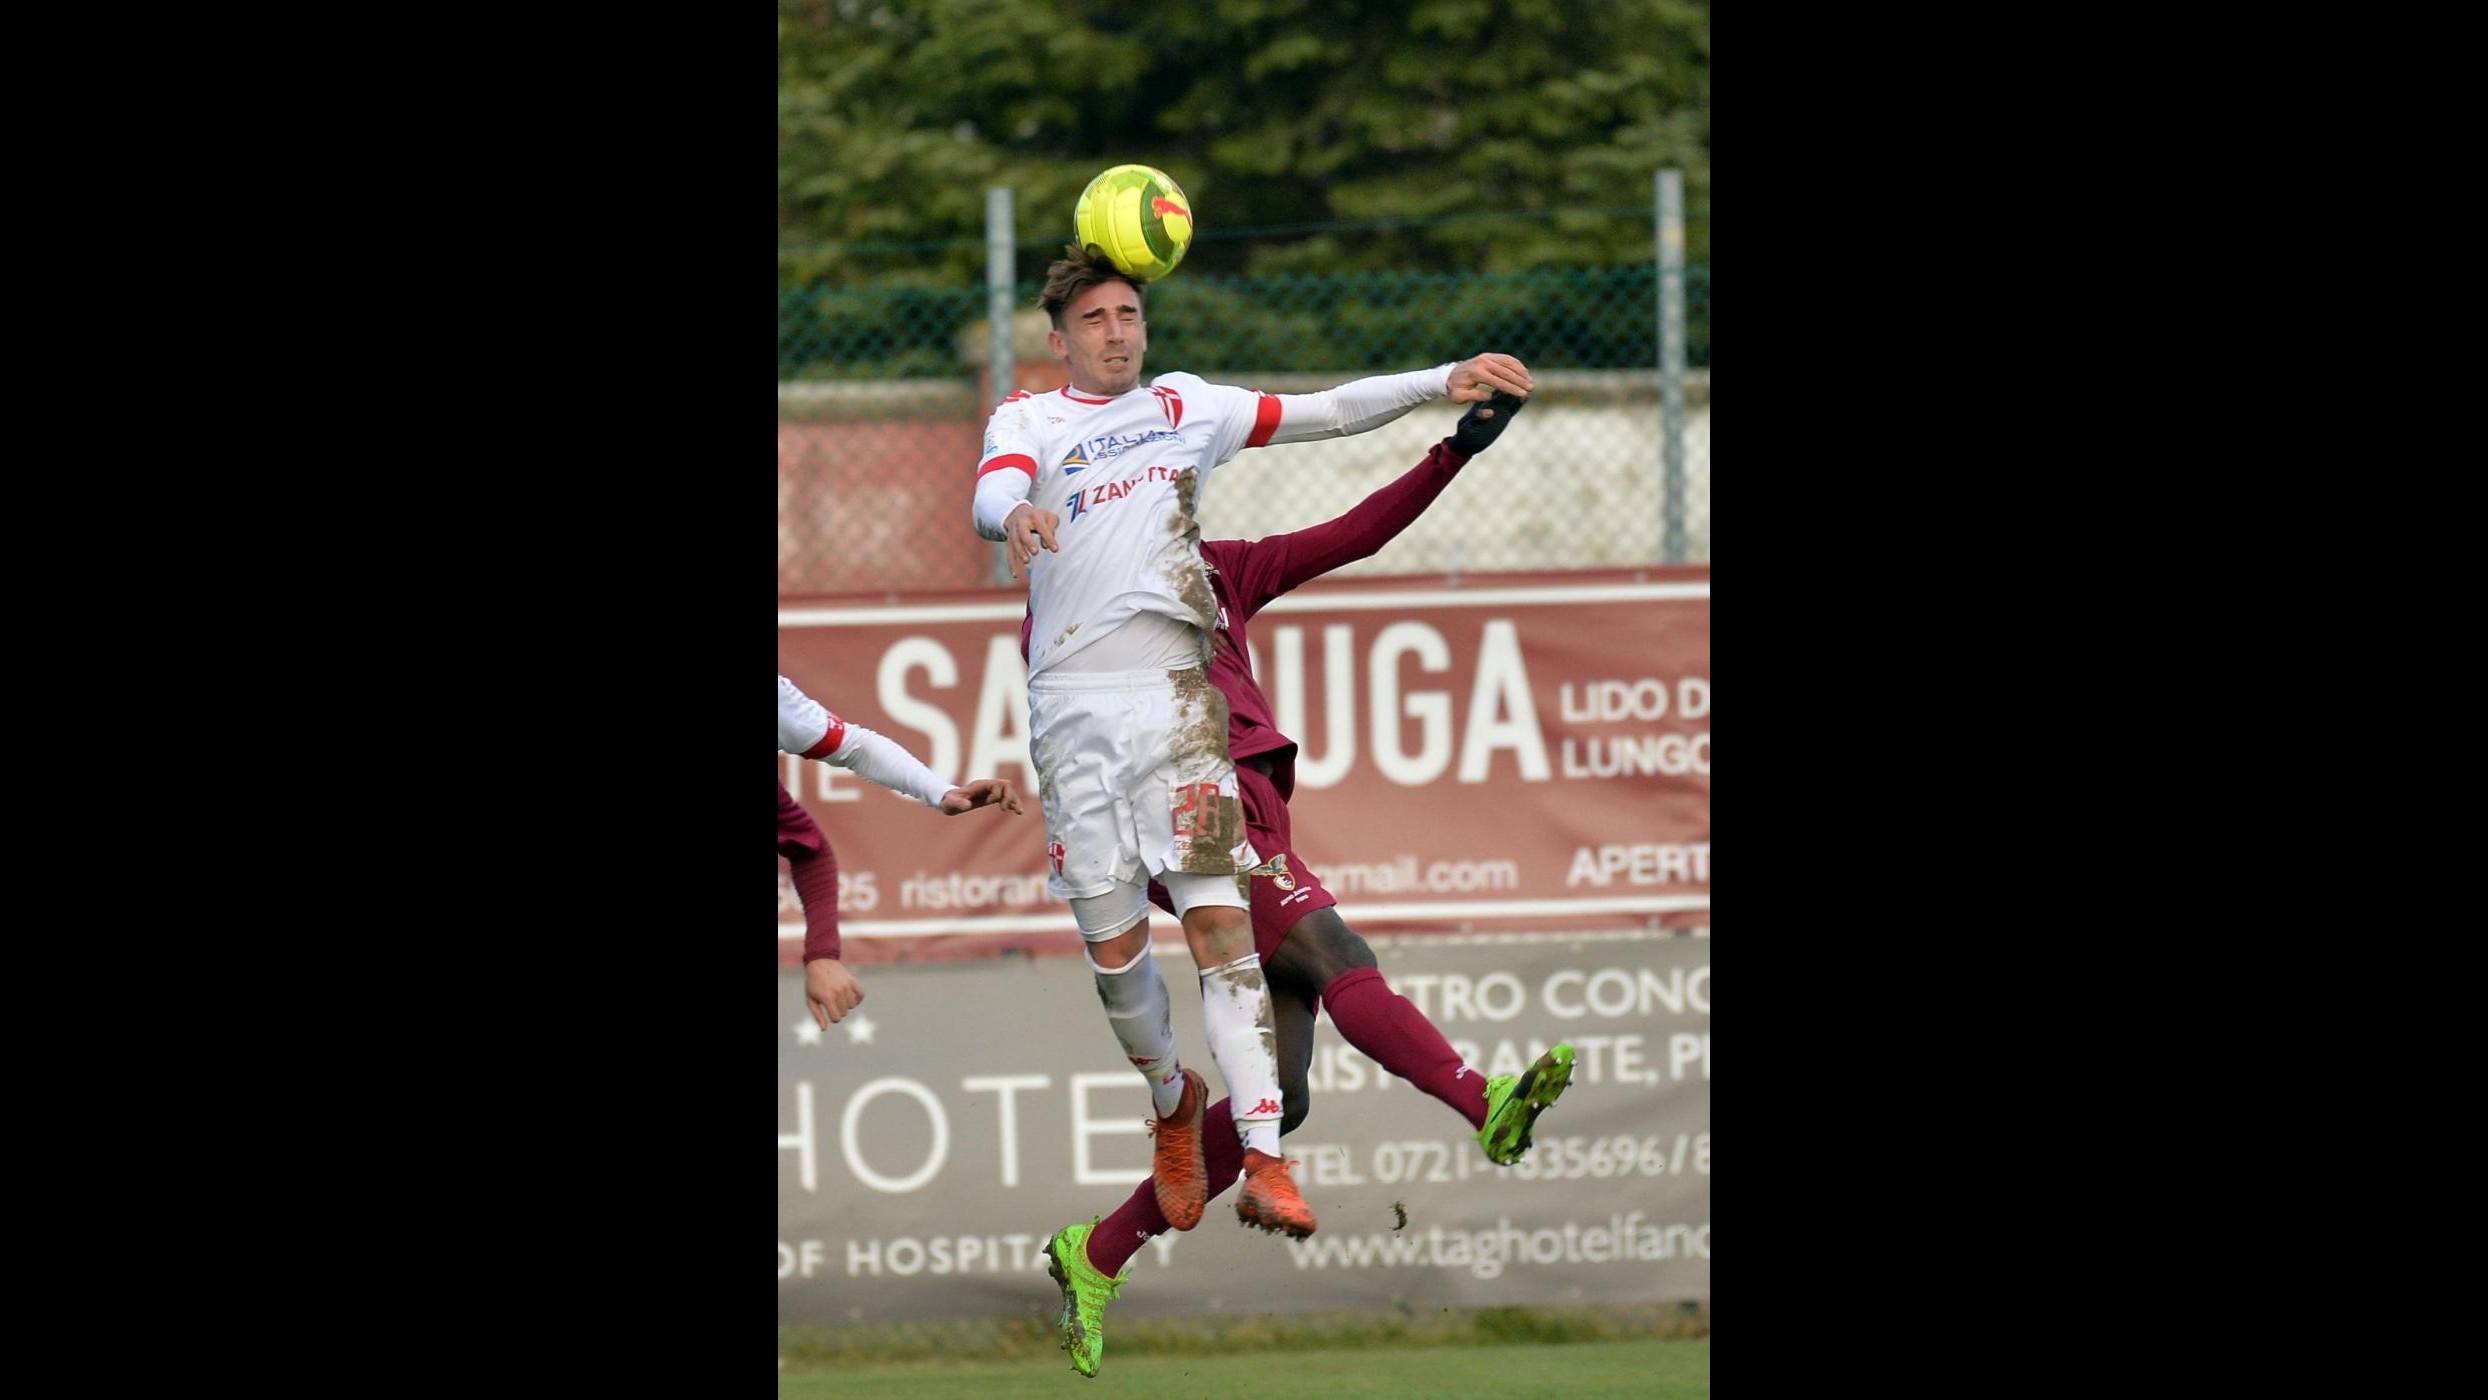 Lega Pro, Fano-Padova 1-1: il fotoracconto